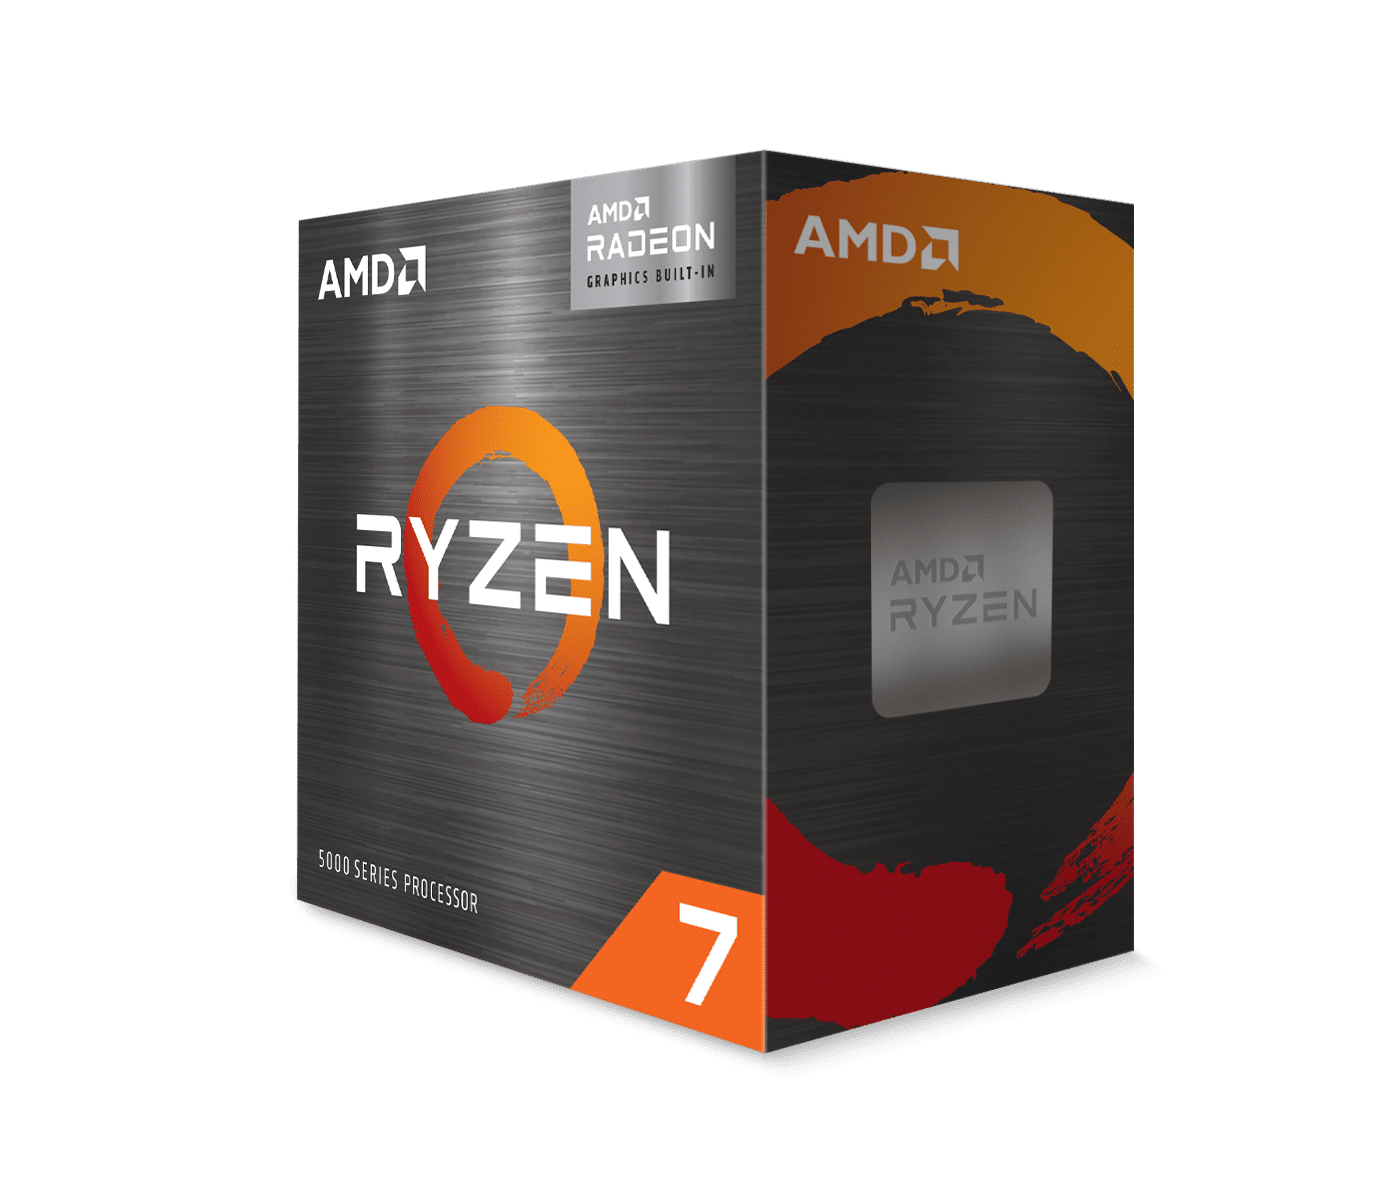 AMD เปิดตัวผลิตภัณฑ์โปรเซสเซอร์ AMD Ryzen 5000 G-Series มาพร้อมกราฟิกการ์ด Radeon Graphics สำหรับผู้ใช้กลุ่ม DIY 3